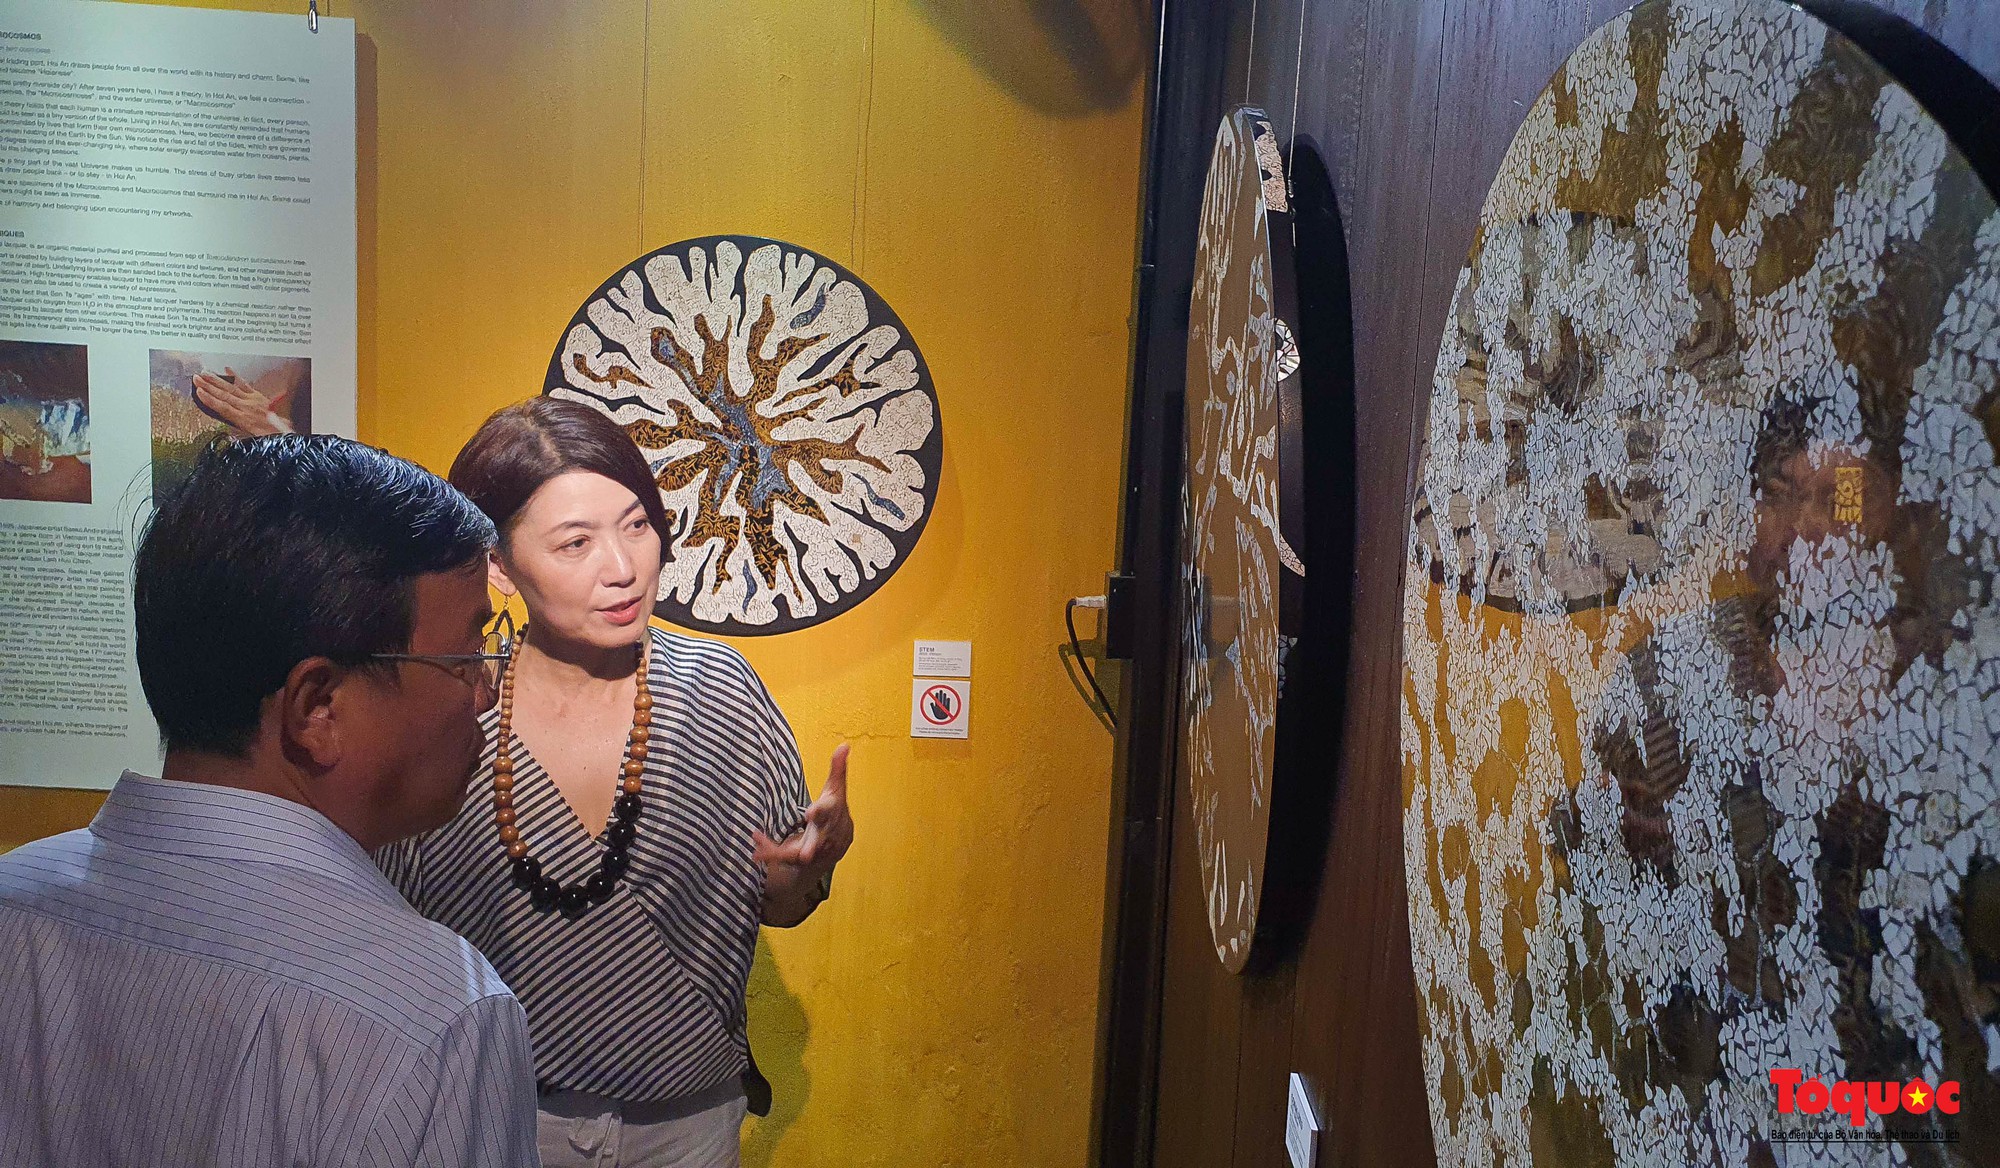 Họa sĩ Nhật Bản triển lãm tranh sơn mài tại Hội An  - Ảnh 3.